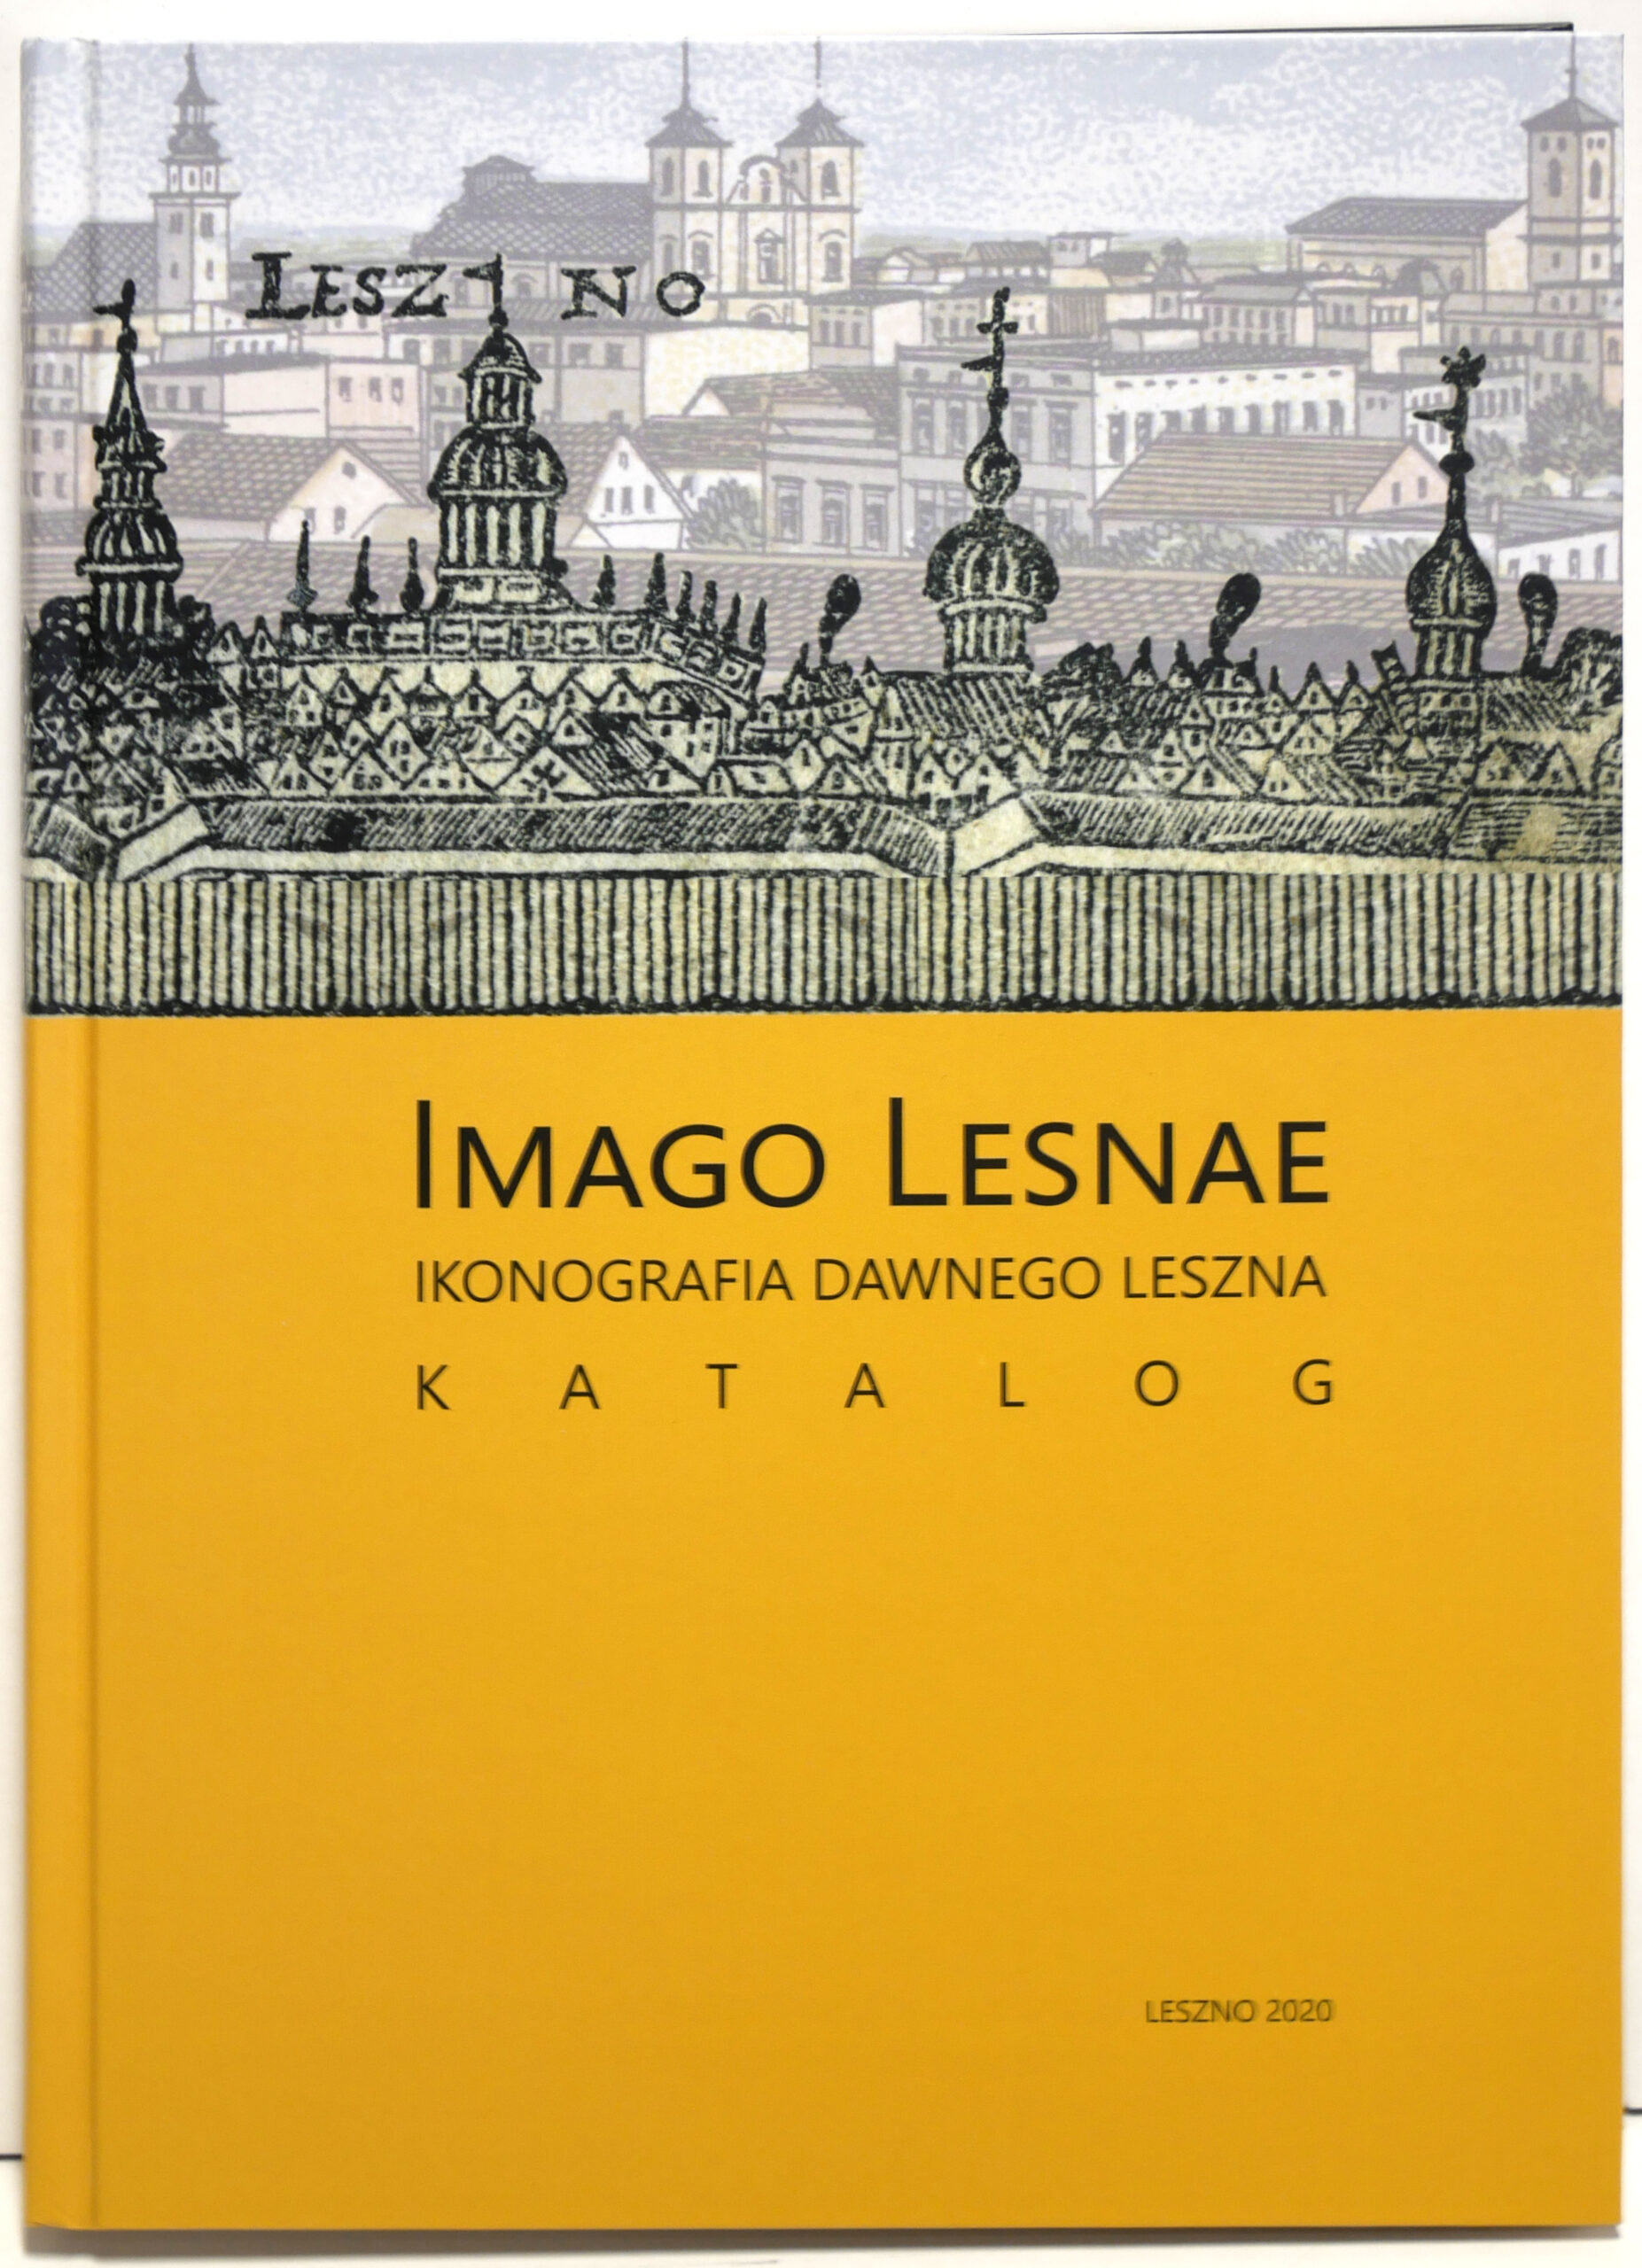 Imago Lesnae. Ikonografia dawnego Leszna. Katalog zbiorów Muzeum Okręgowego w Lesznie.